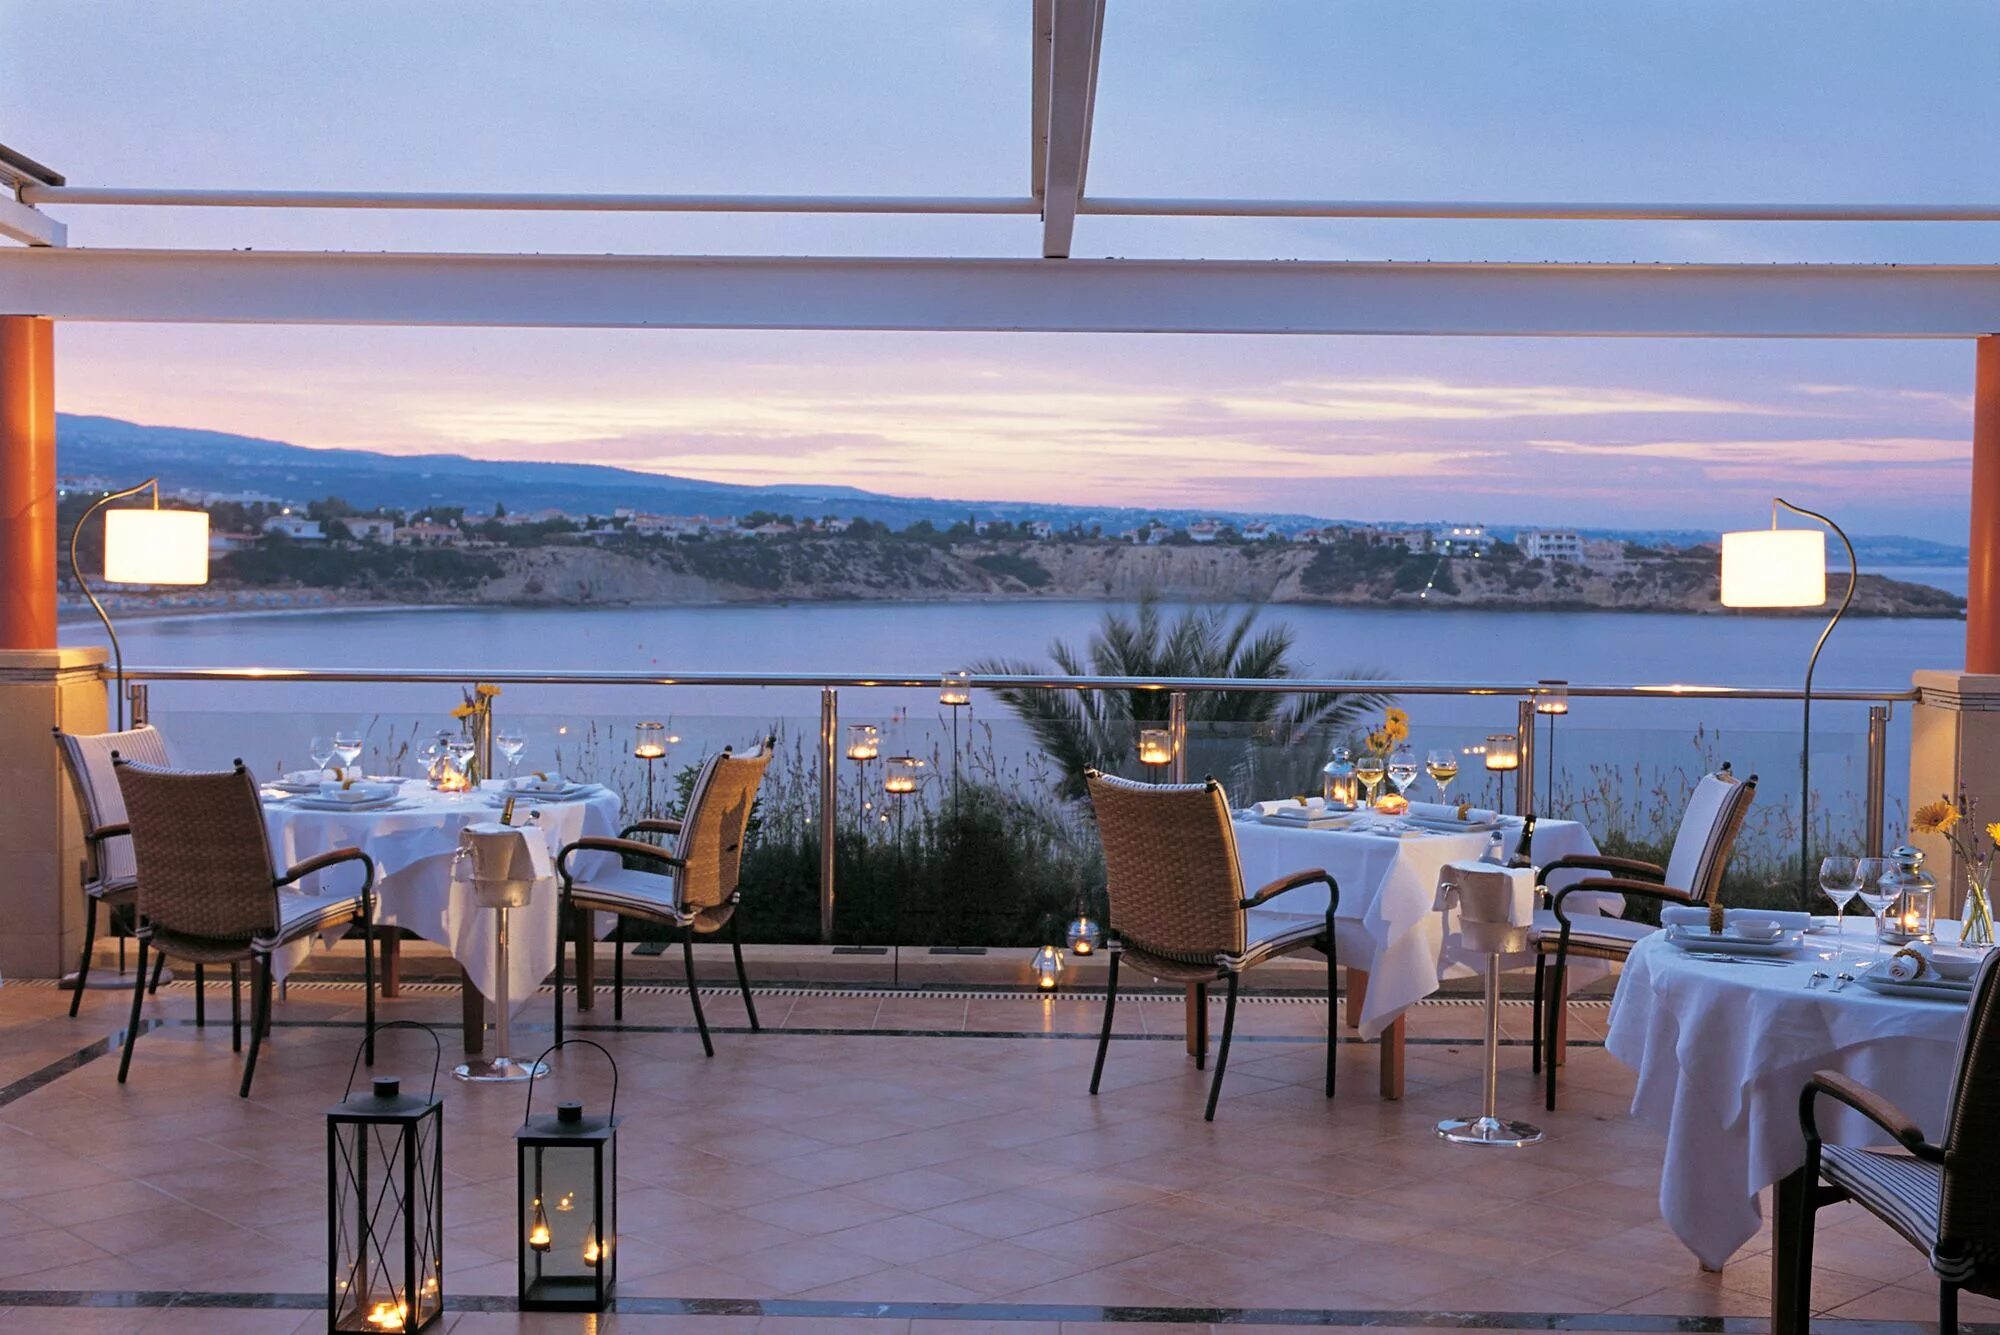 Кафе на набережной Кипра. Кипр Thalassa. Ресторан с видом на море. Ресторан у моря. The view is beautiful